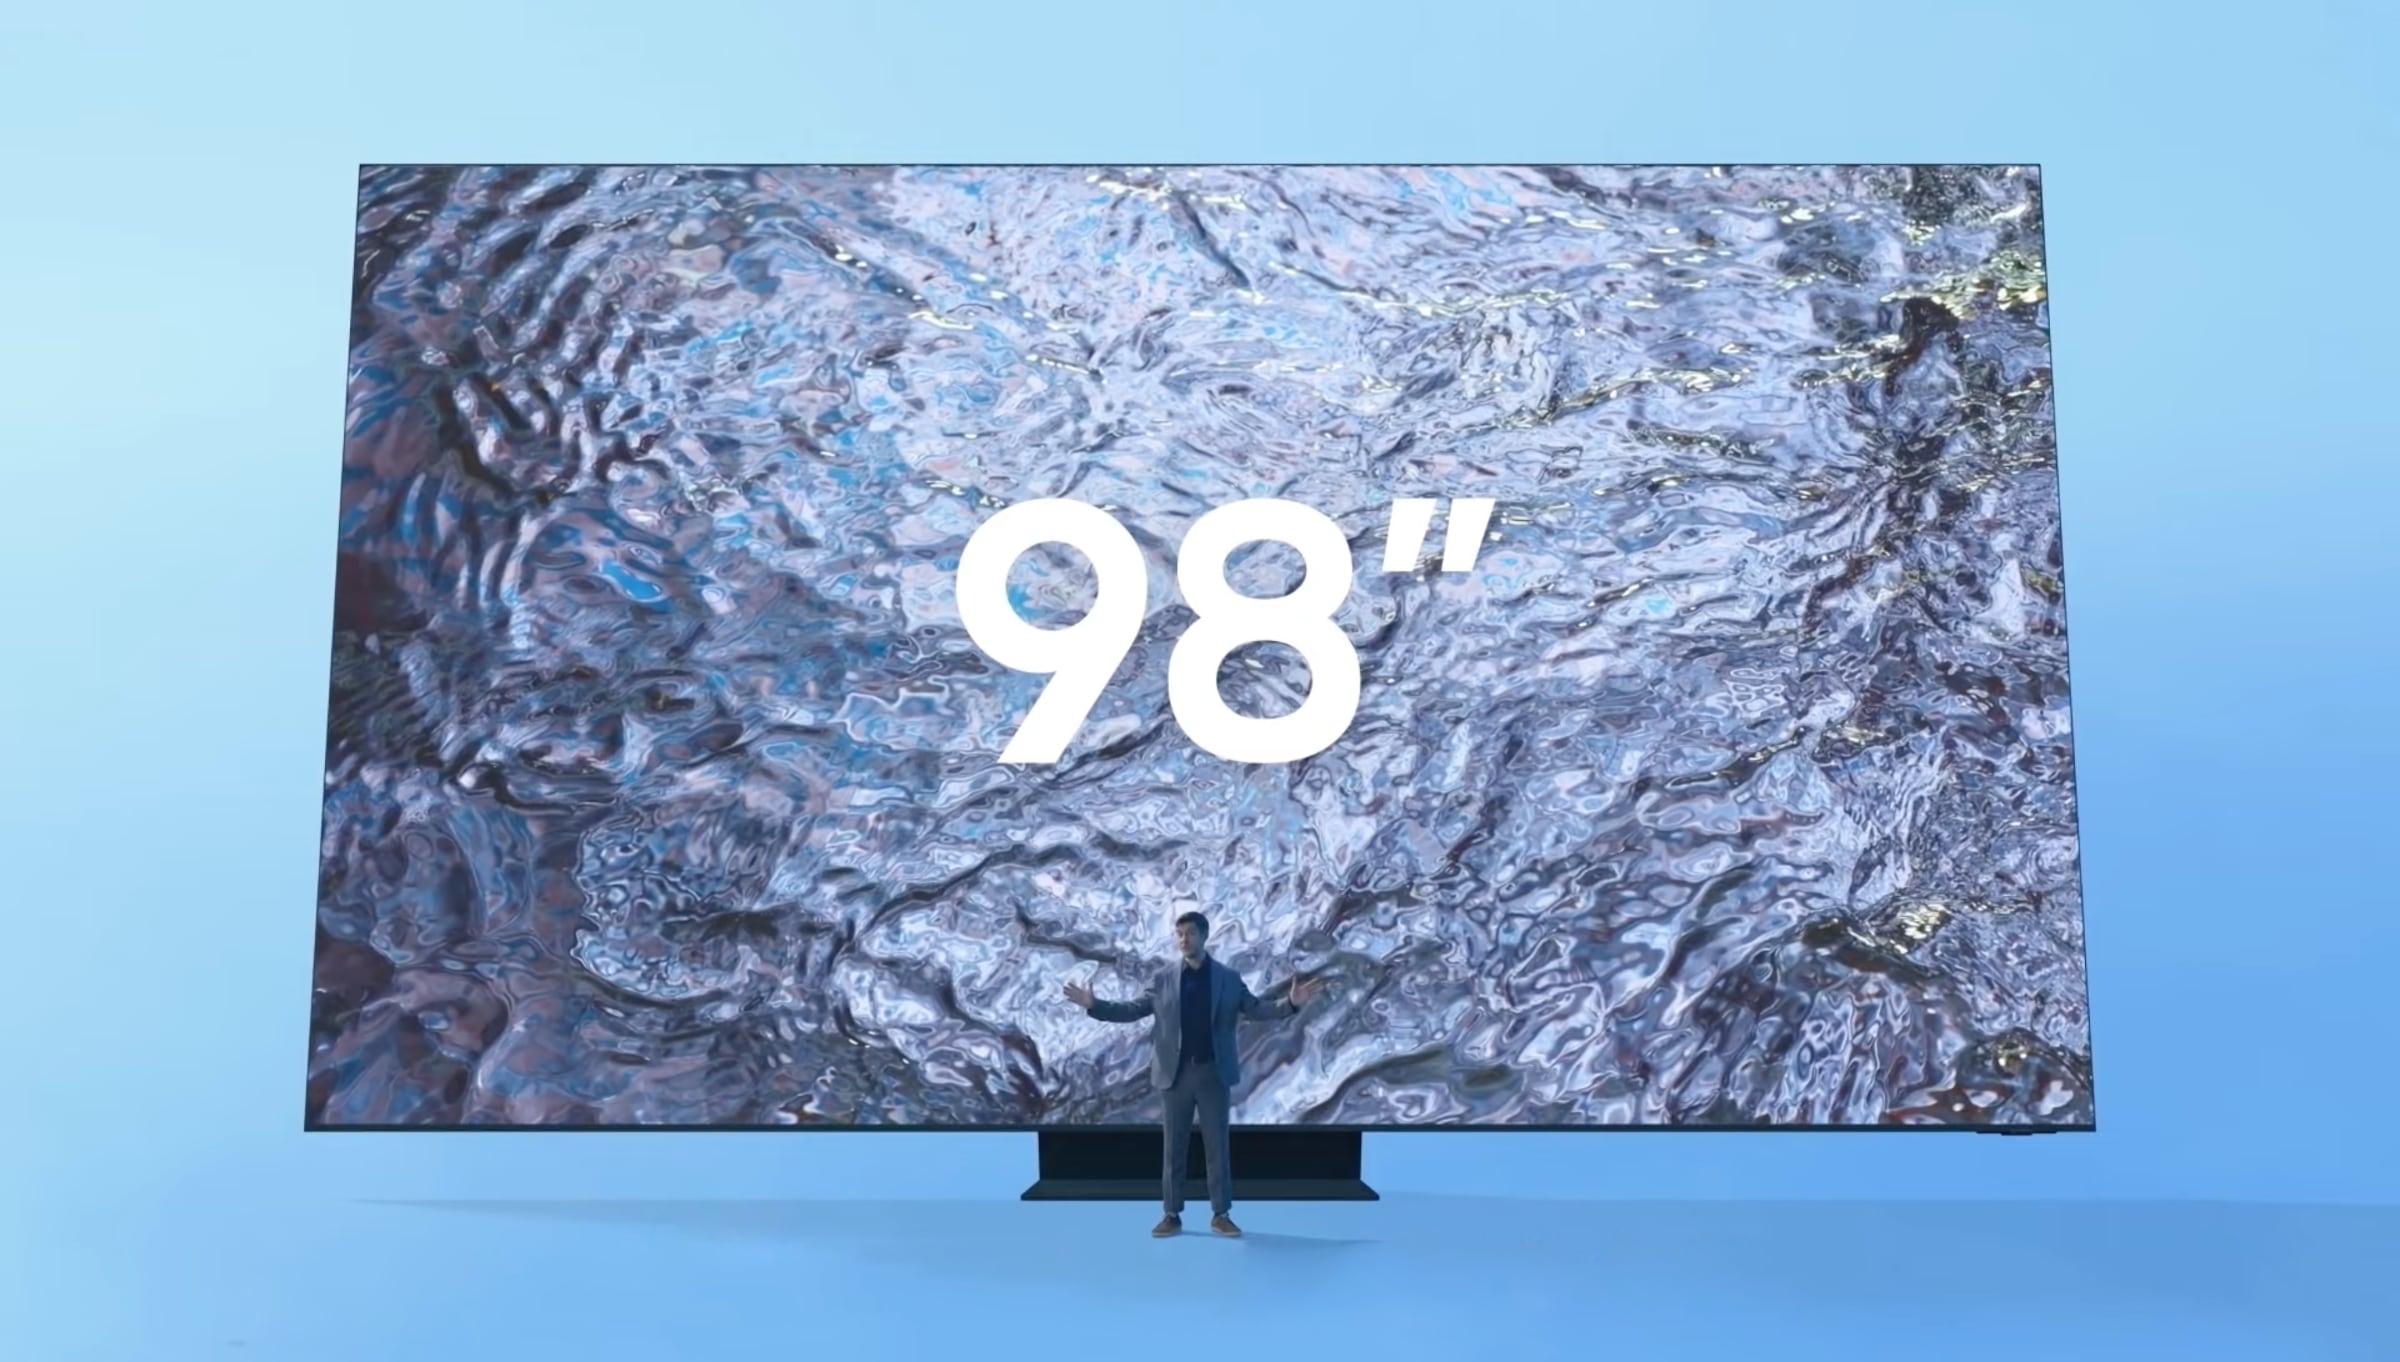 Leopard uendelig klippe Samsung lancerer et billigere 98" 4K TV i år - FlatpanelsDK